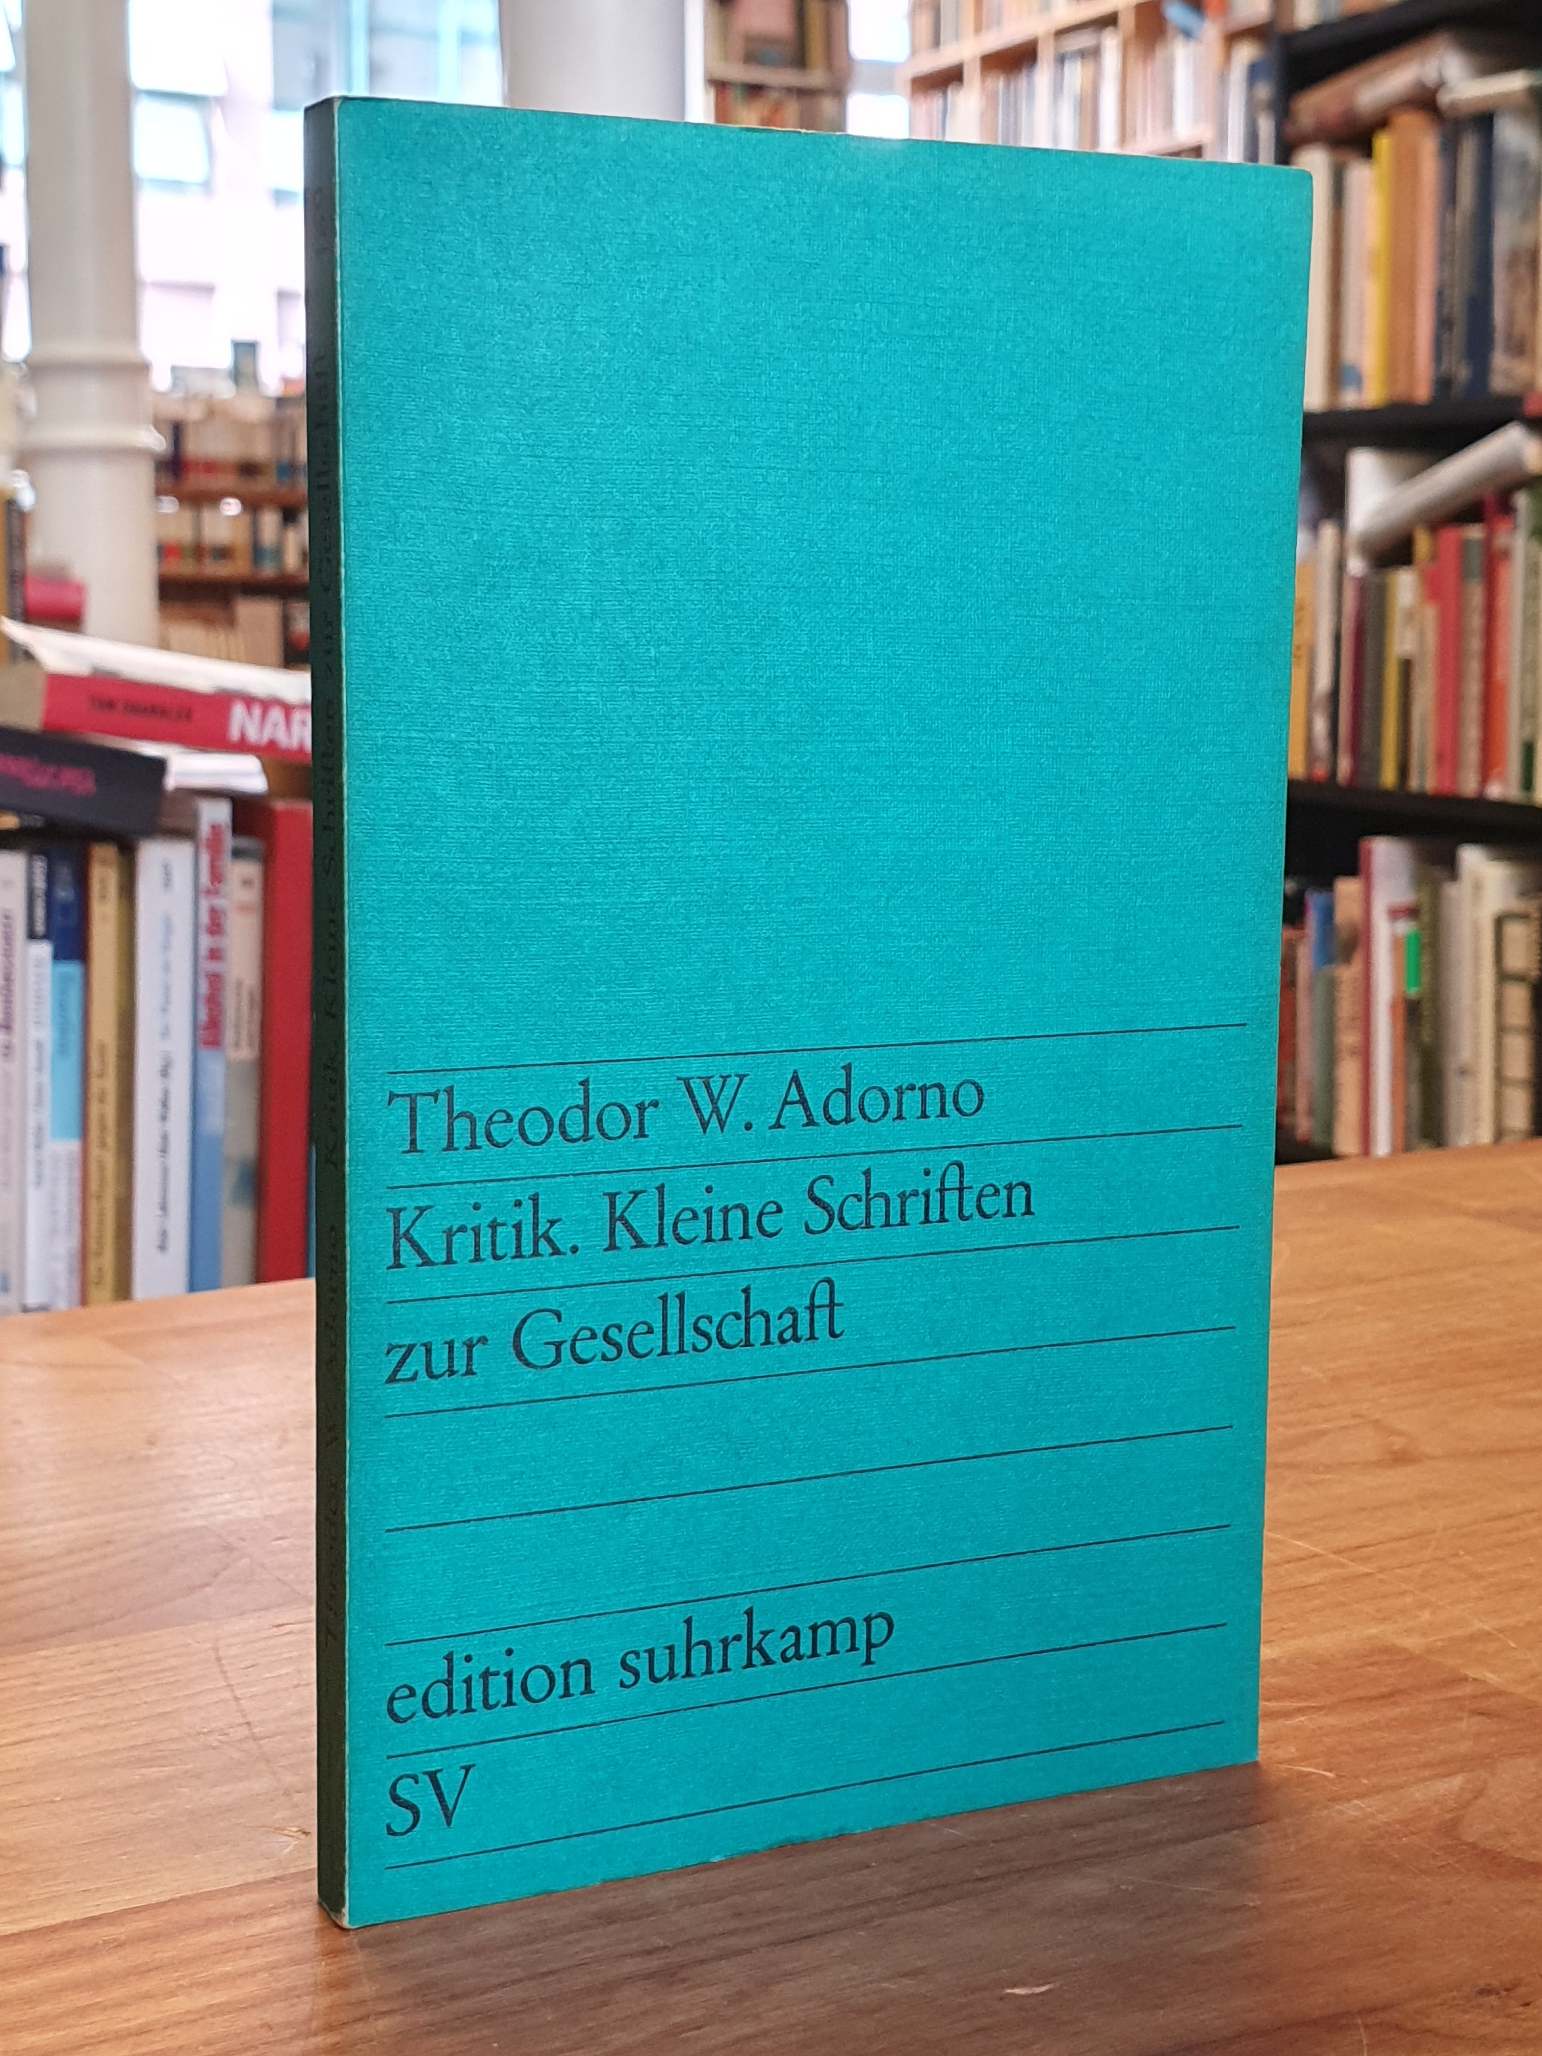 Adorno, Kritik – kleine Schriften zur Gesellschaft,